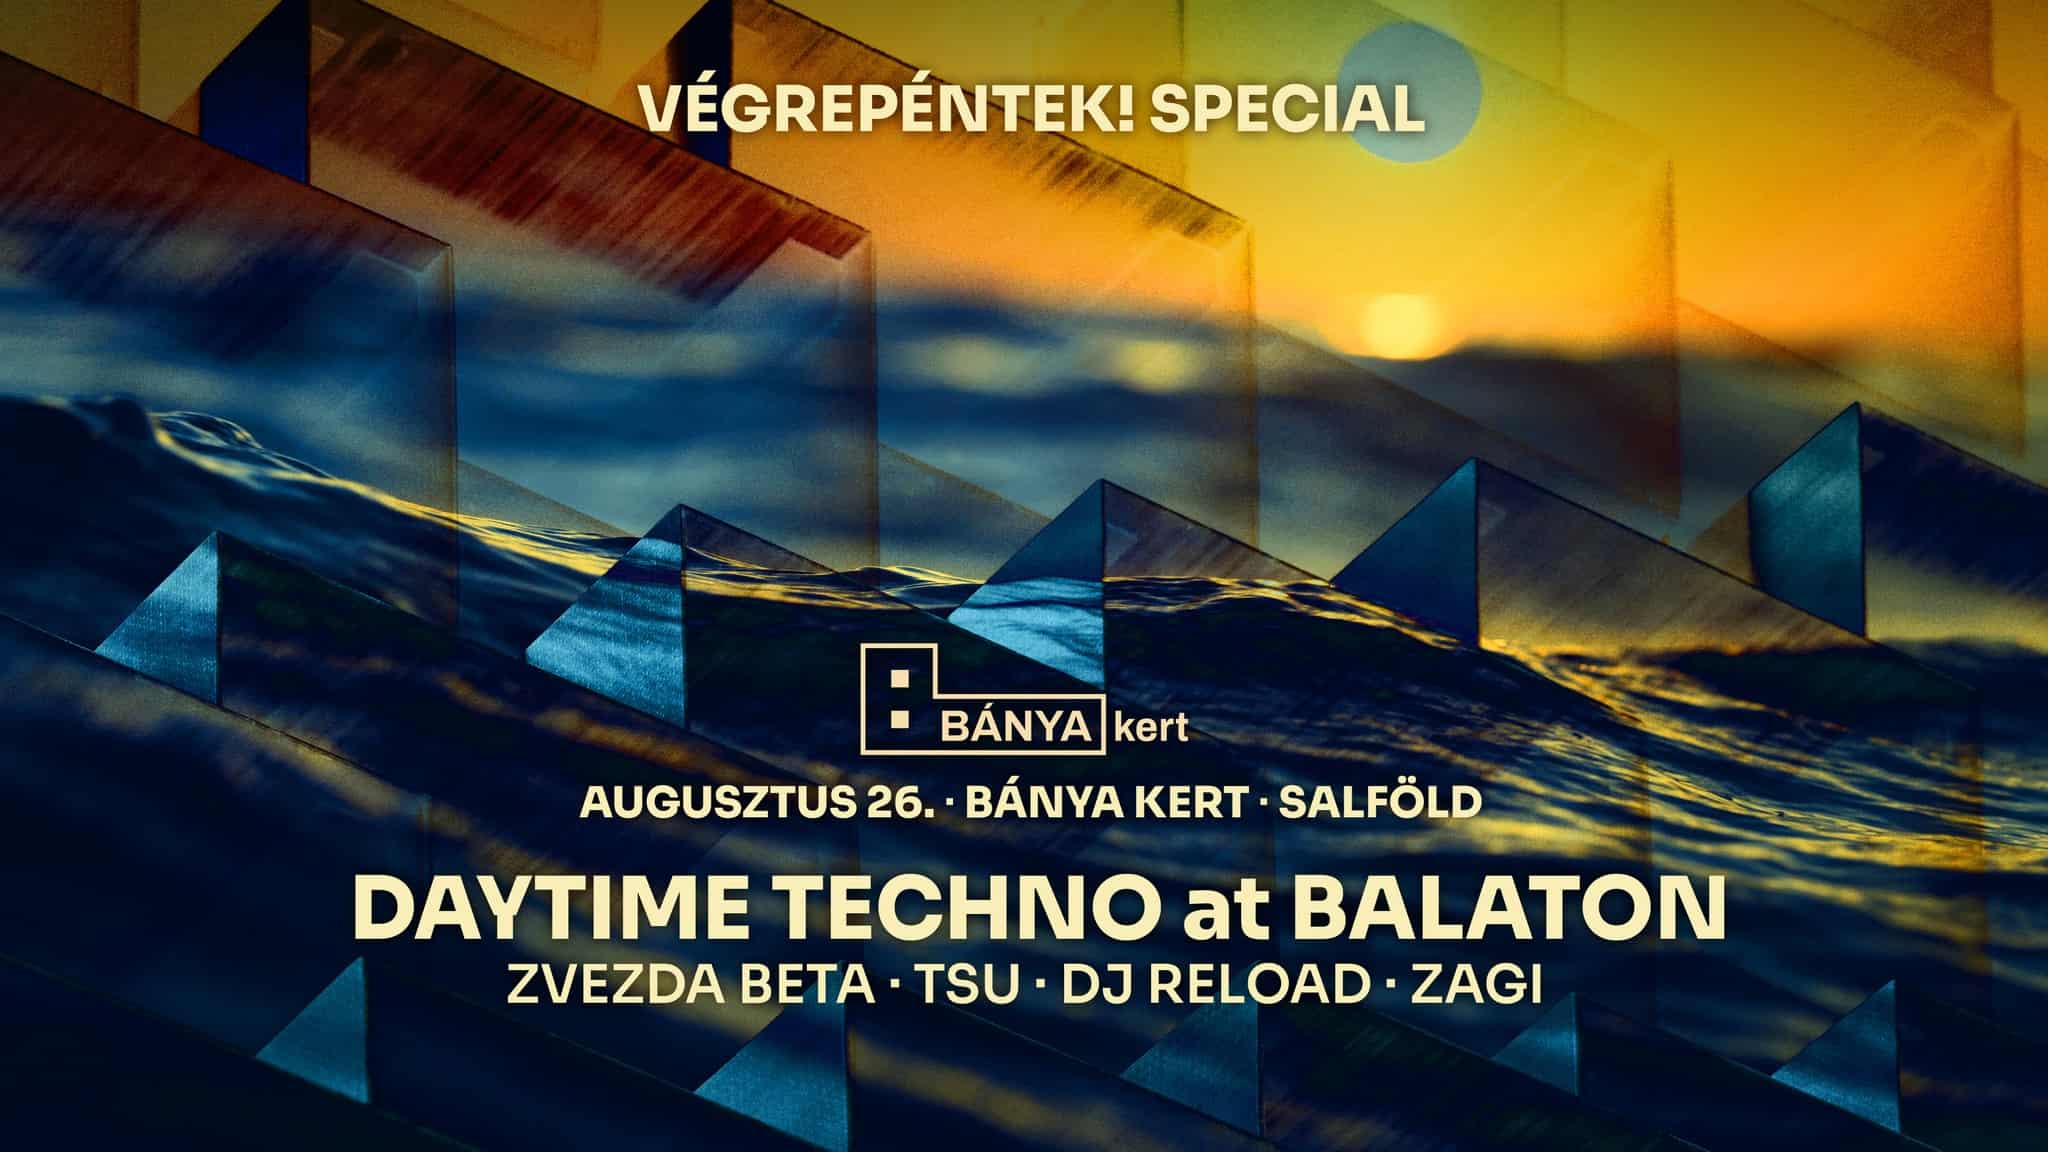 Daytime Techno at Balaton